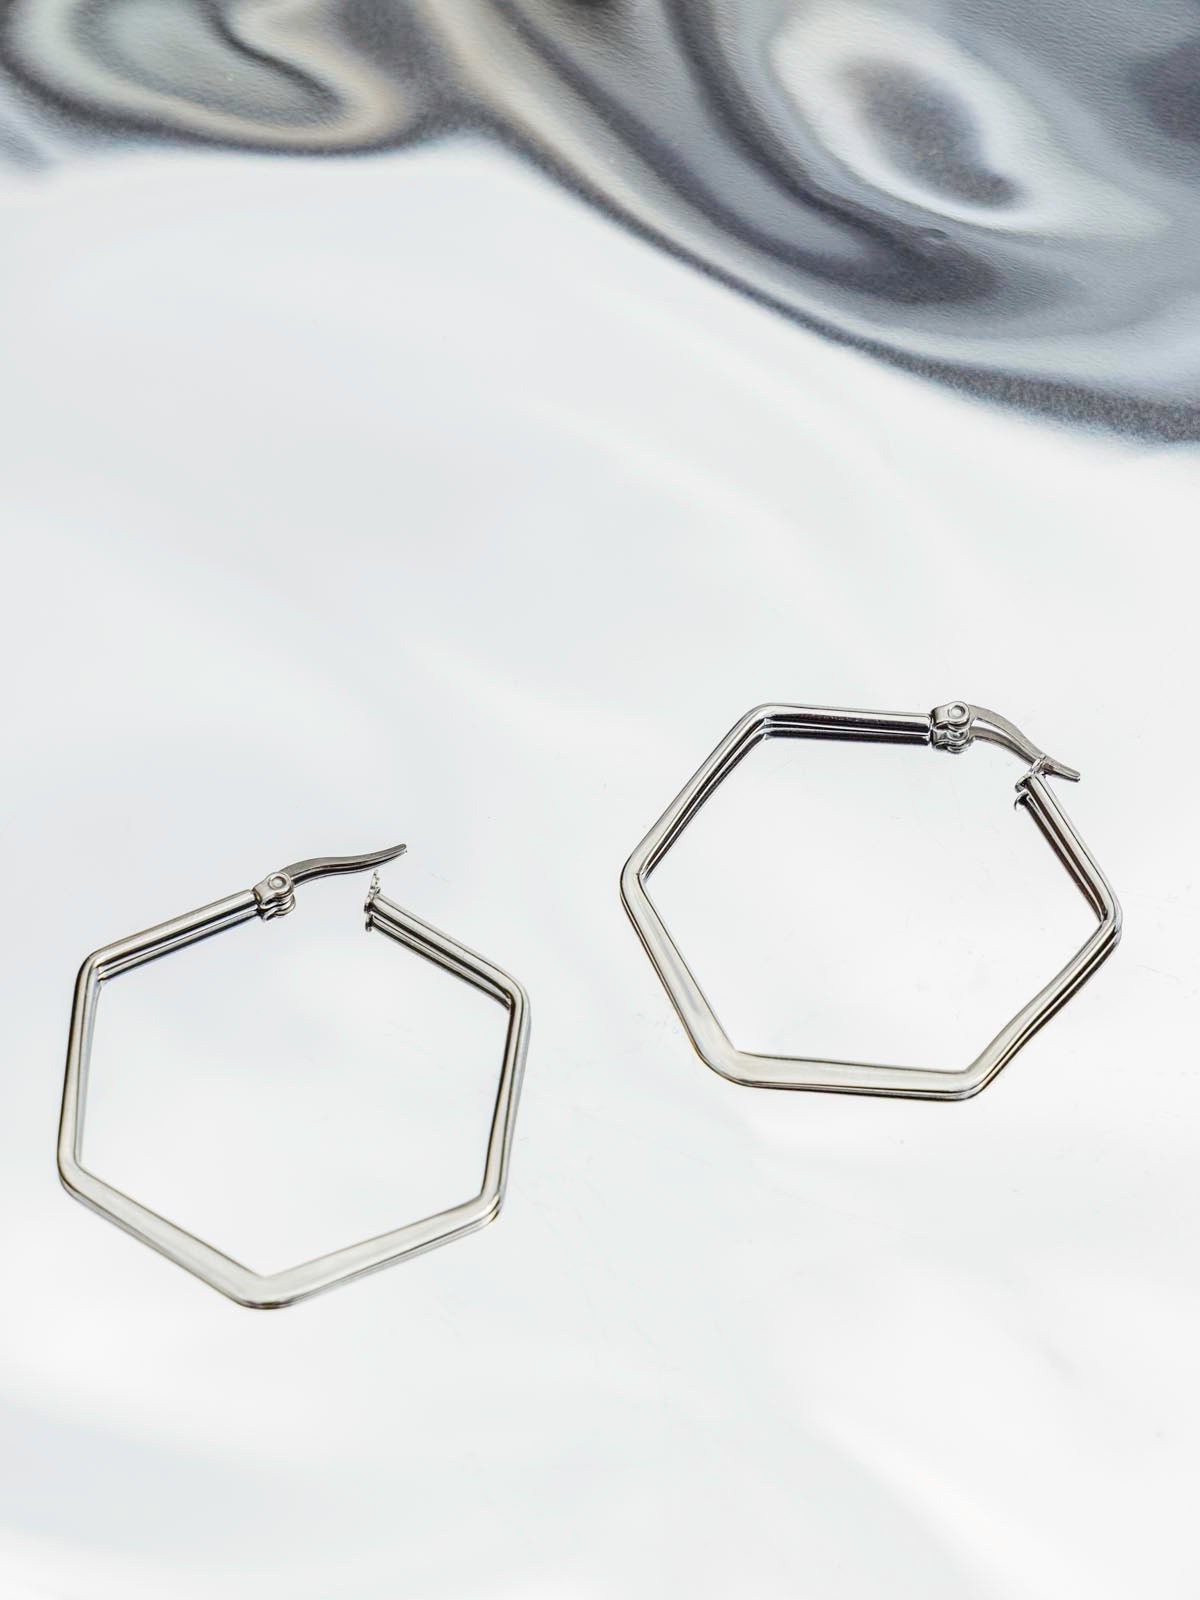 Hexagon silver earrings